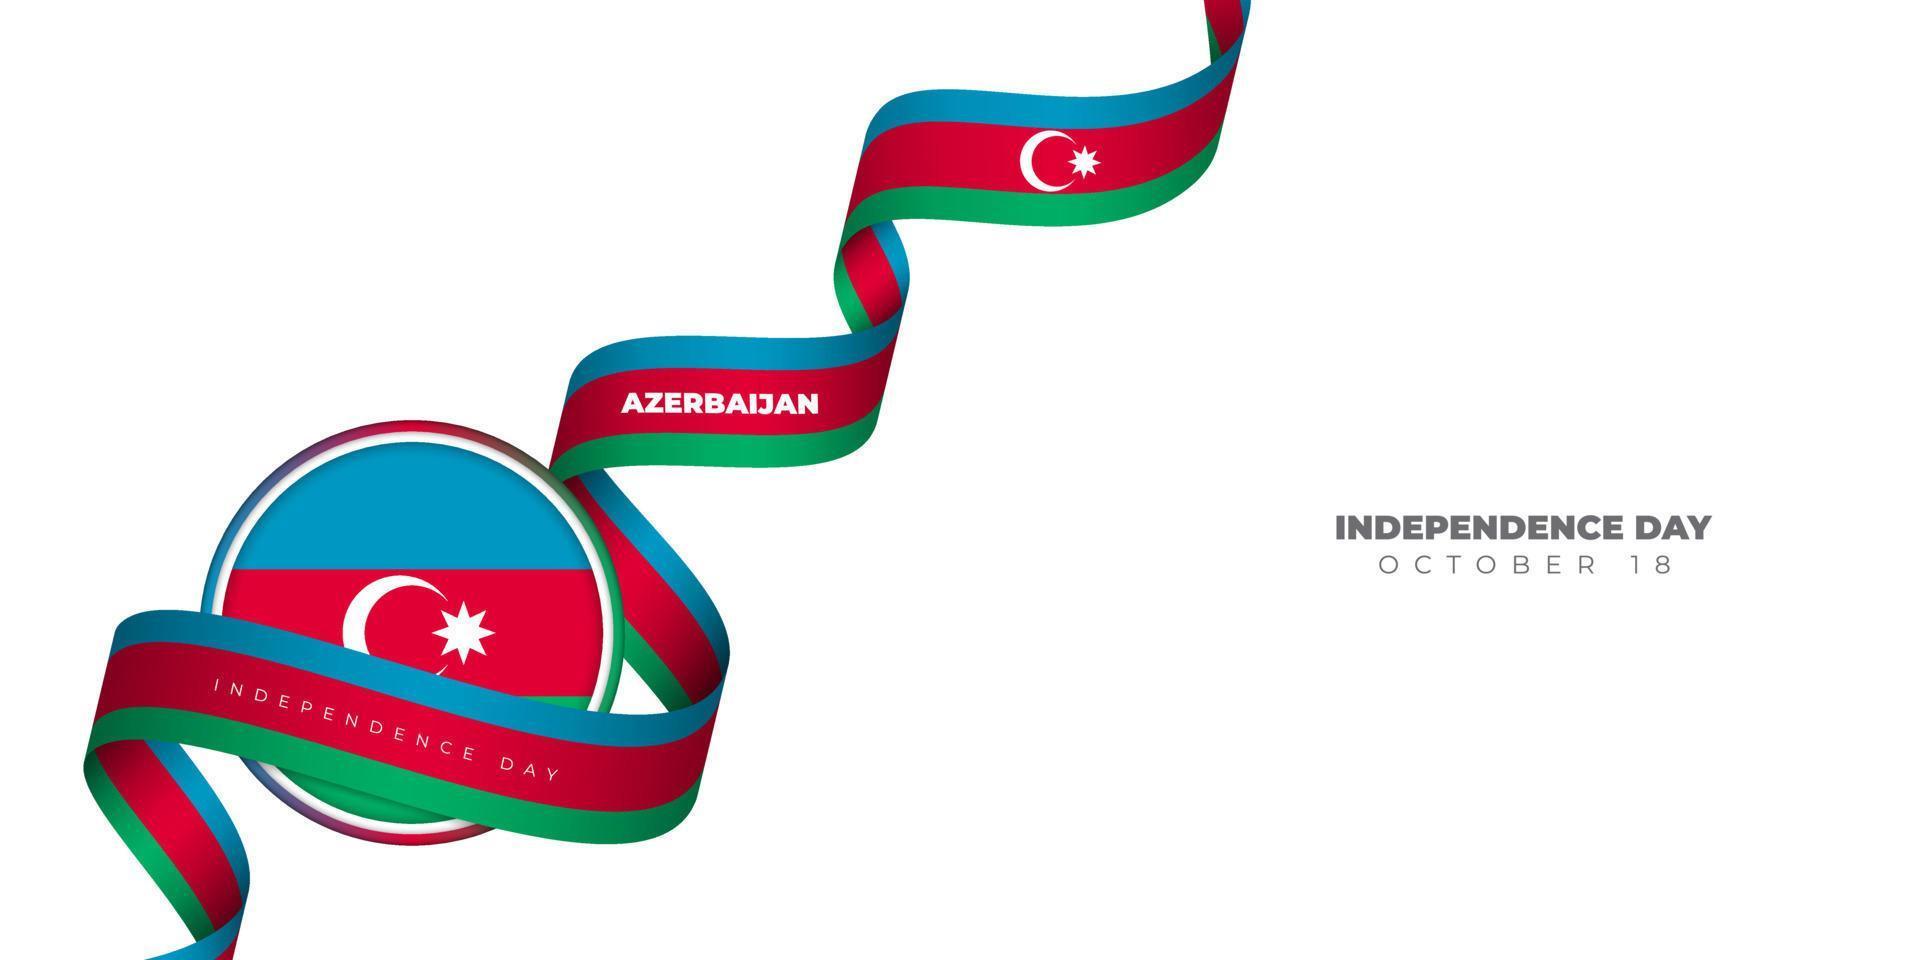 illustrazione vettoriale di bandiera rotonda azerbaigiana con sventolando il nastro azerbaigiano. giorno dell'indipendenza dell'Azerbaigian.